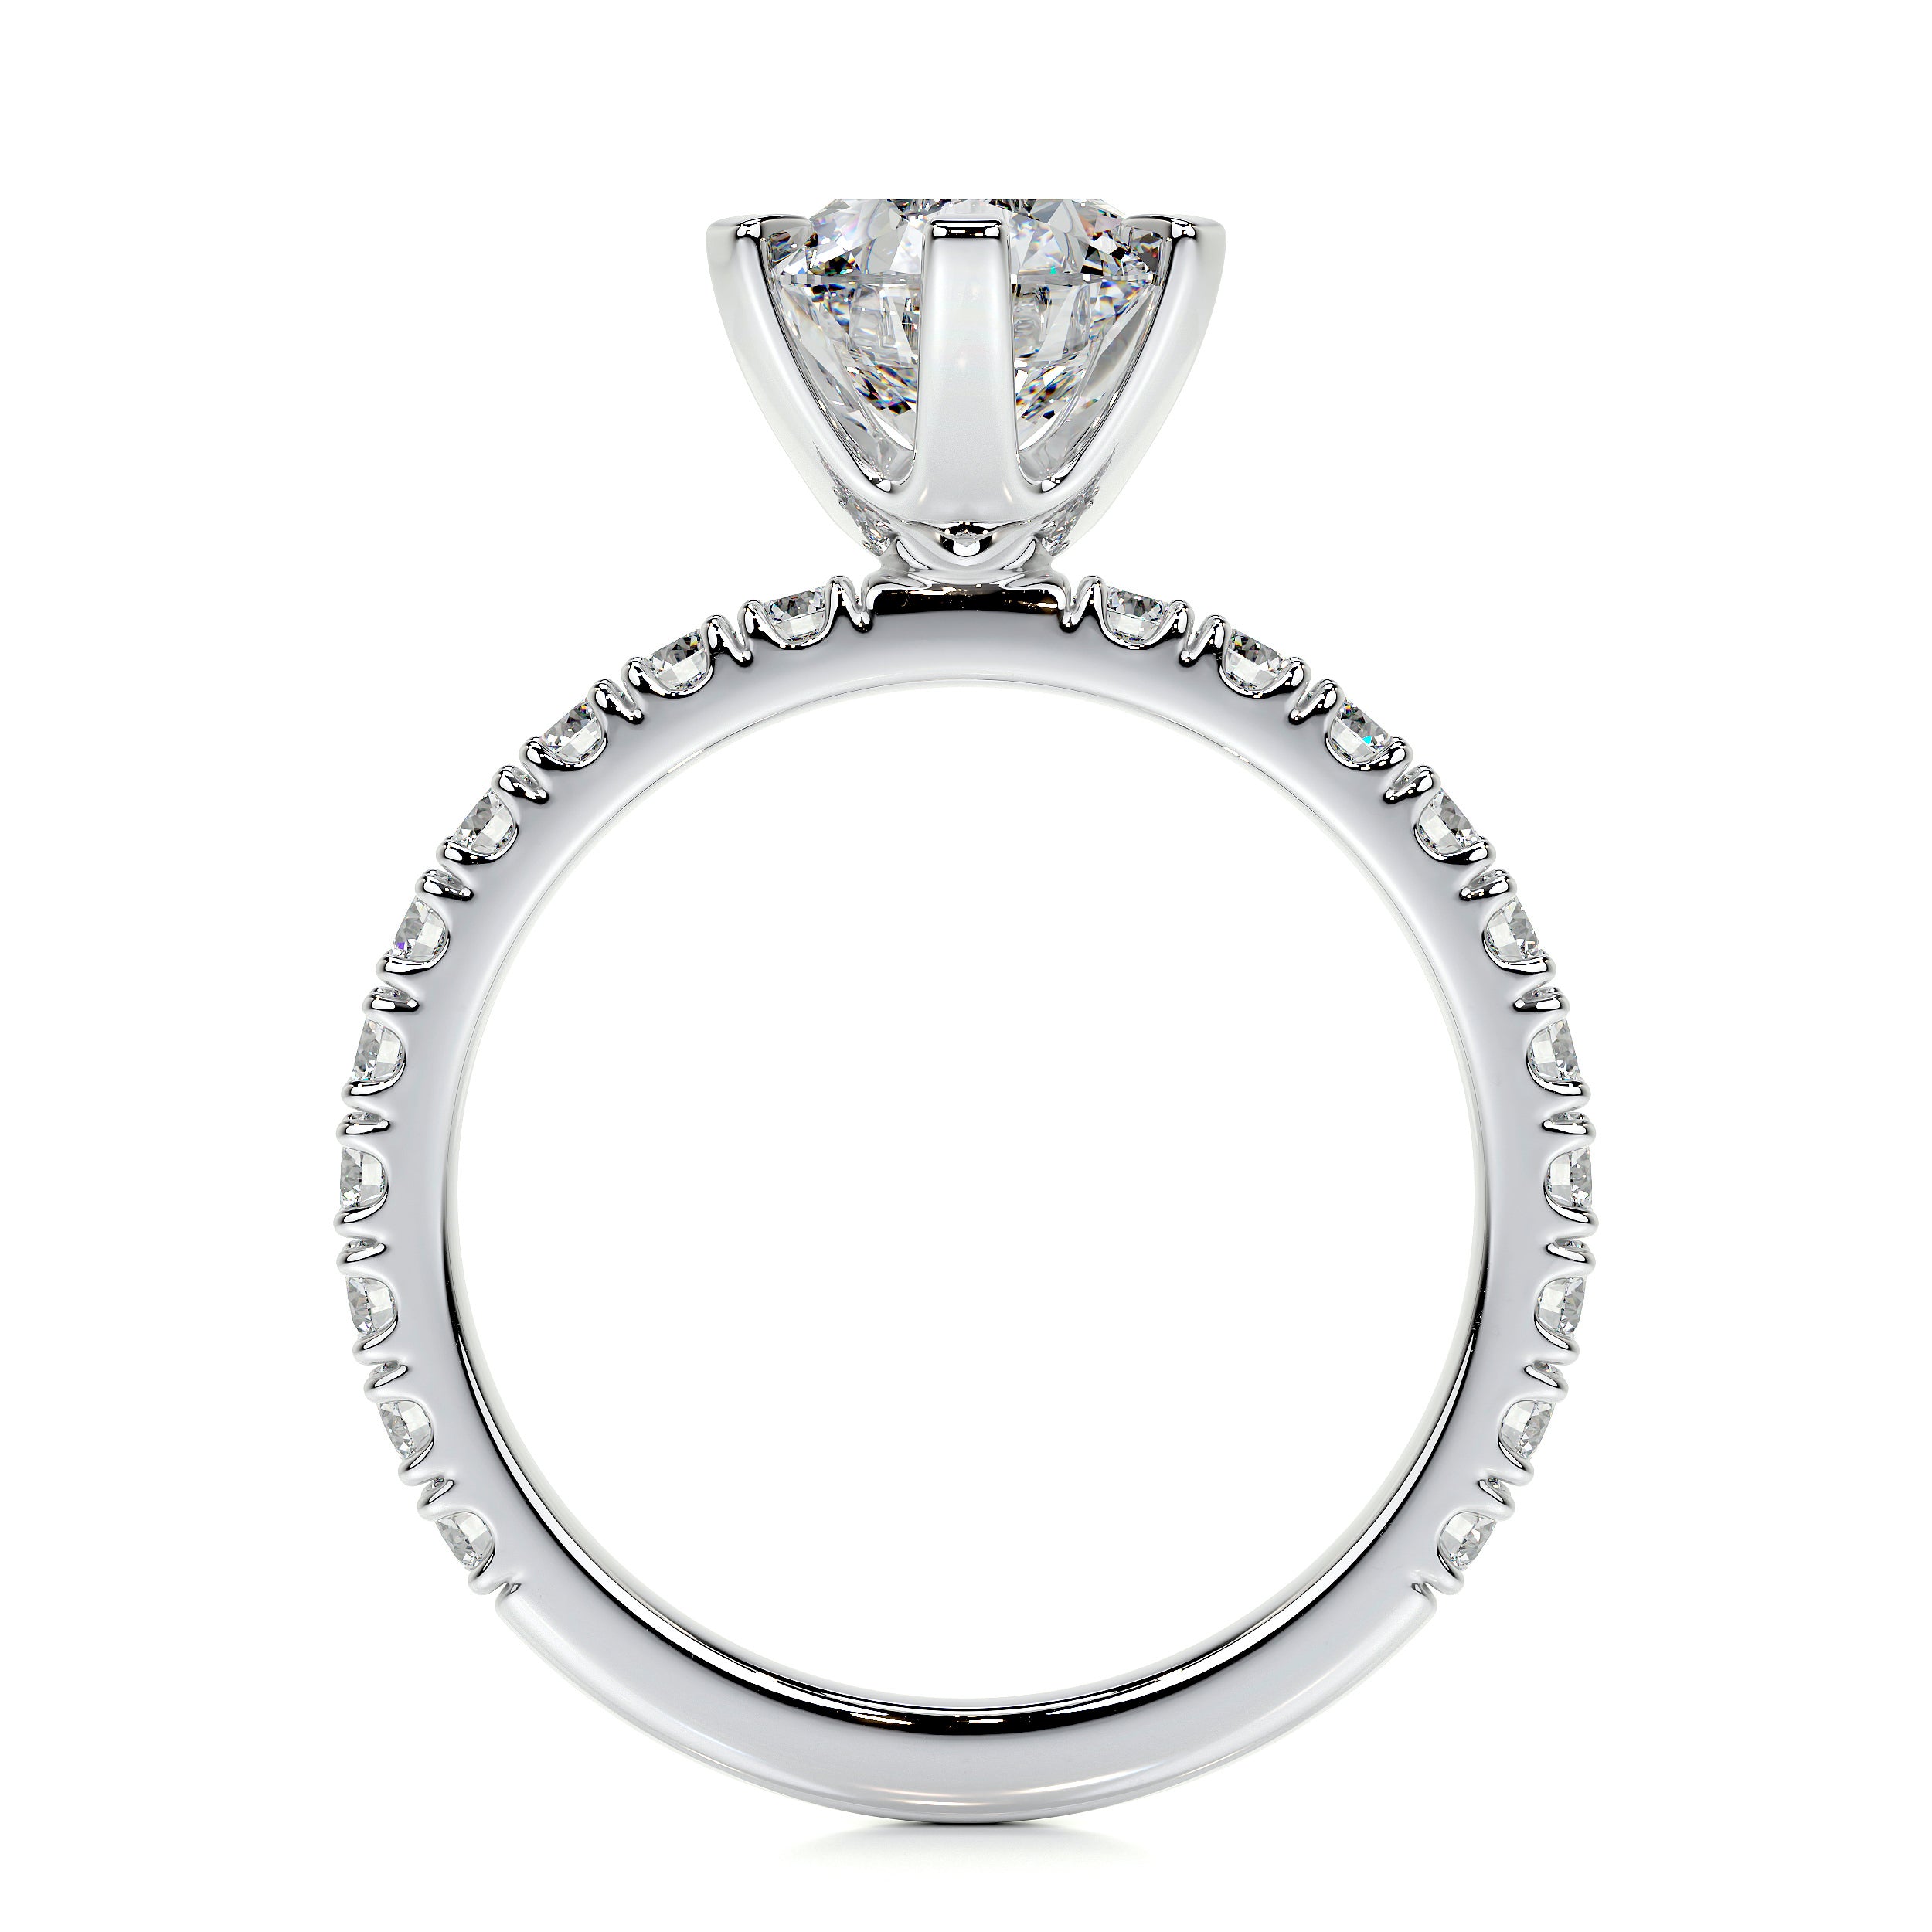 Veronica Lab Grown Diamond Ring   (2 Carat) -18K White Gold